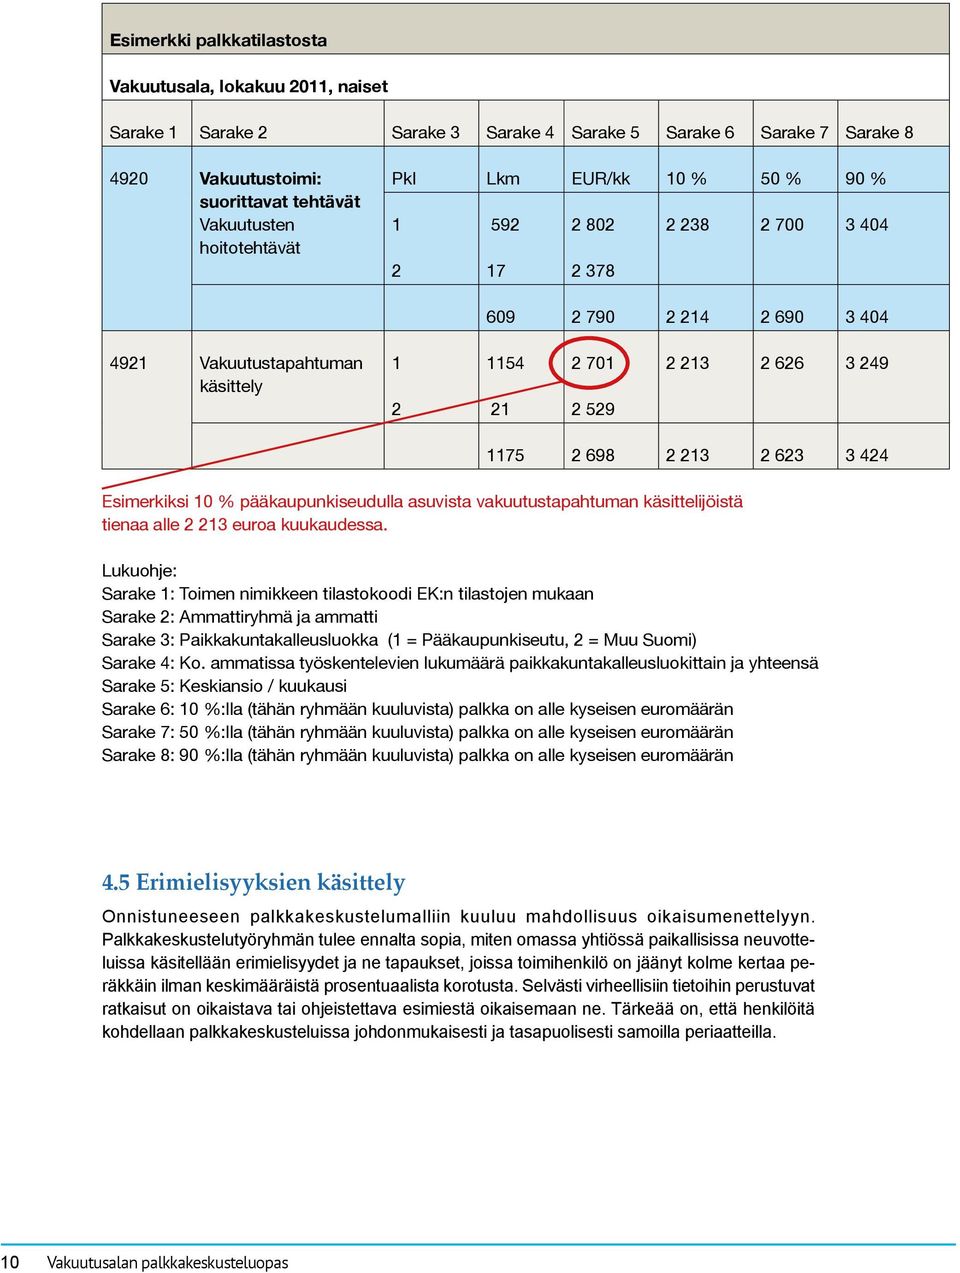 424 Esimerkiksi 10 % pääkaupunkiseudulla asuvista vakuutustapahtuman käsittelijöistä tienaa alle 2 213 euroa kuukaudessa.